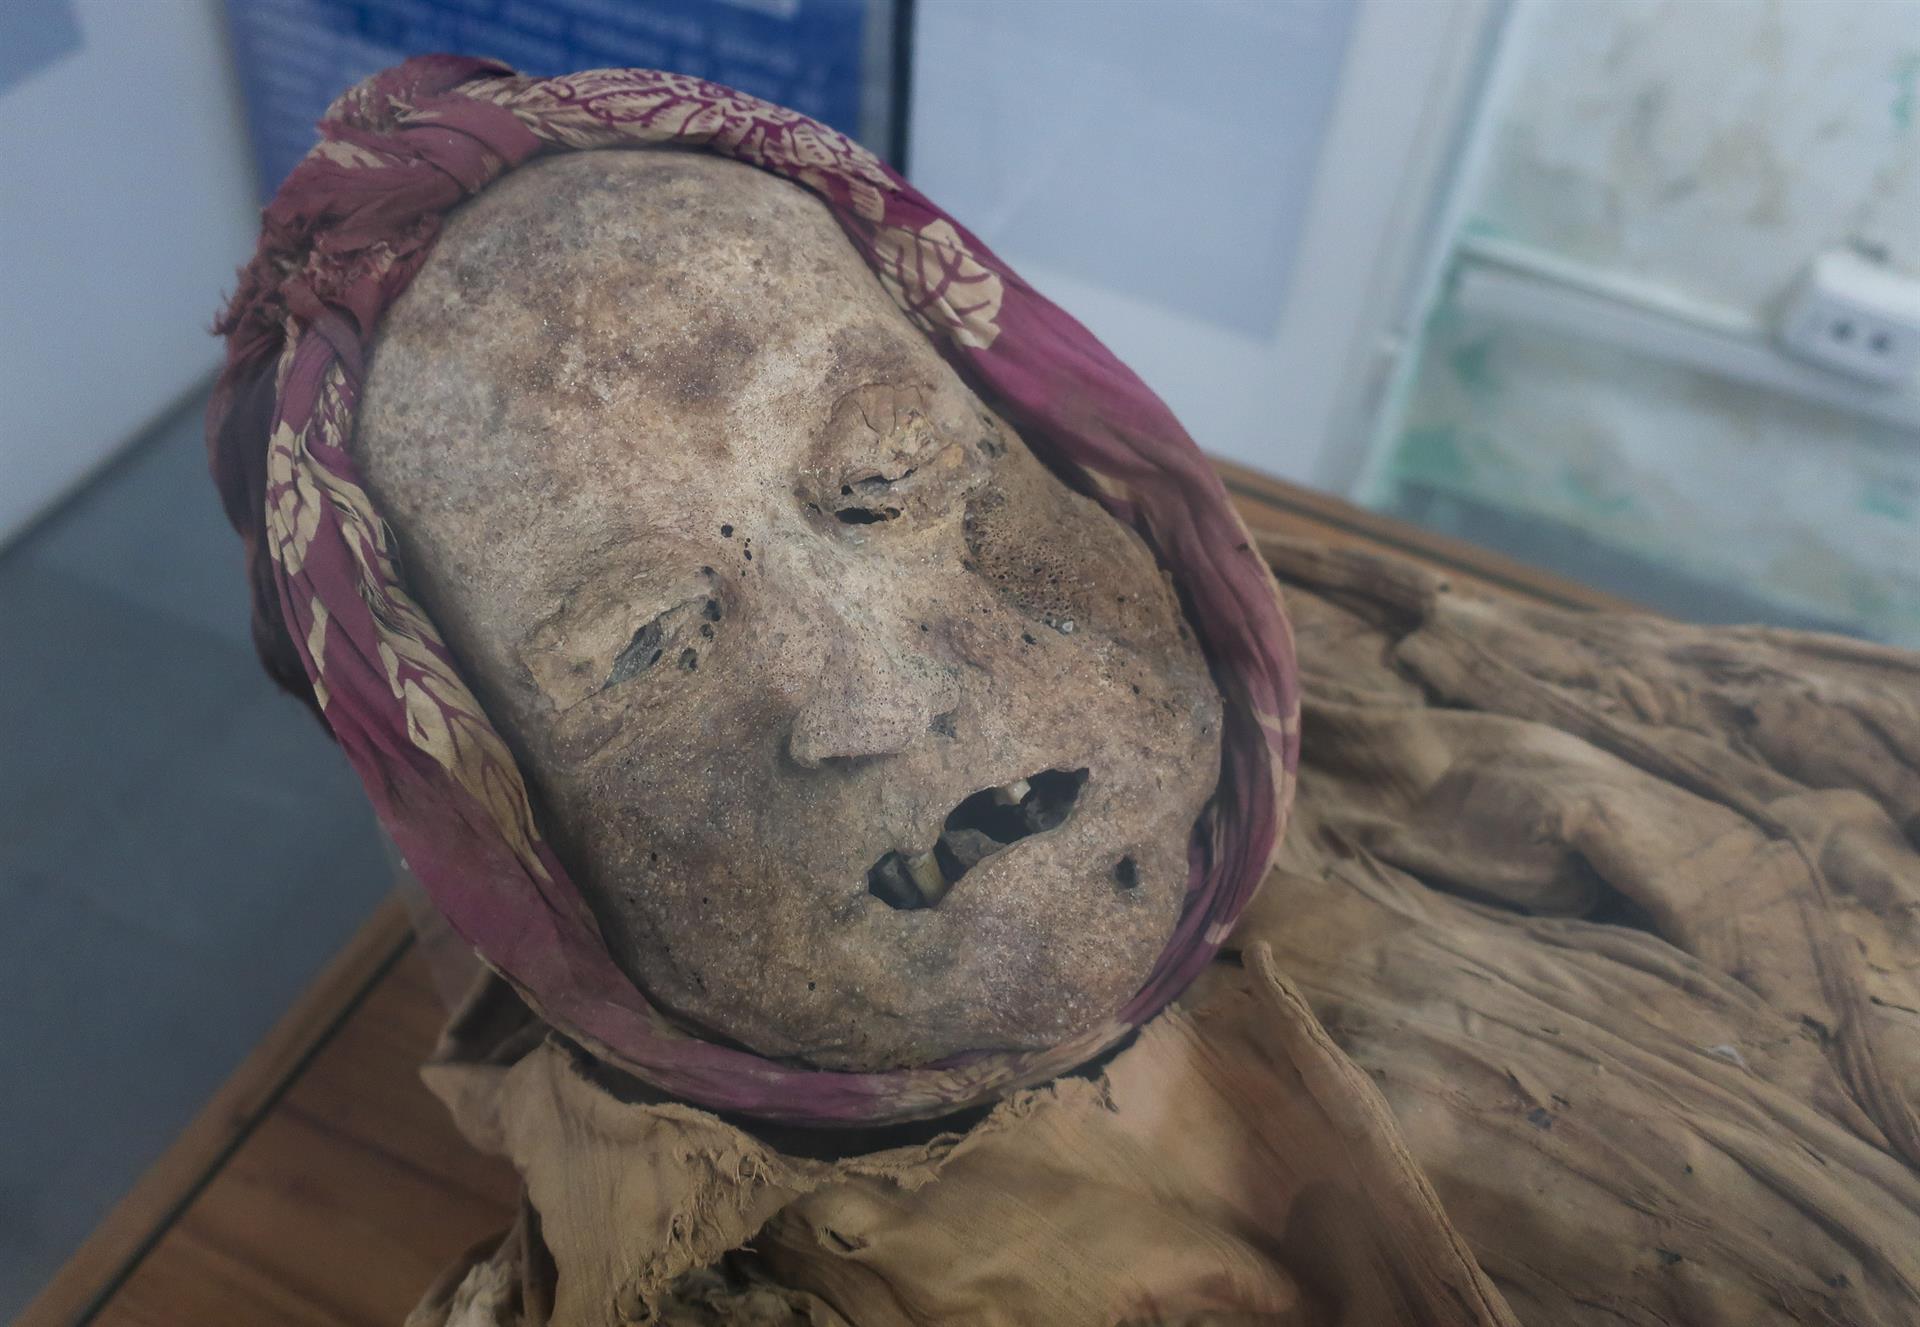 ¿Quién es la momia de Guano? El enigma crece en Ecuador y contradice la creencia